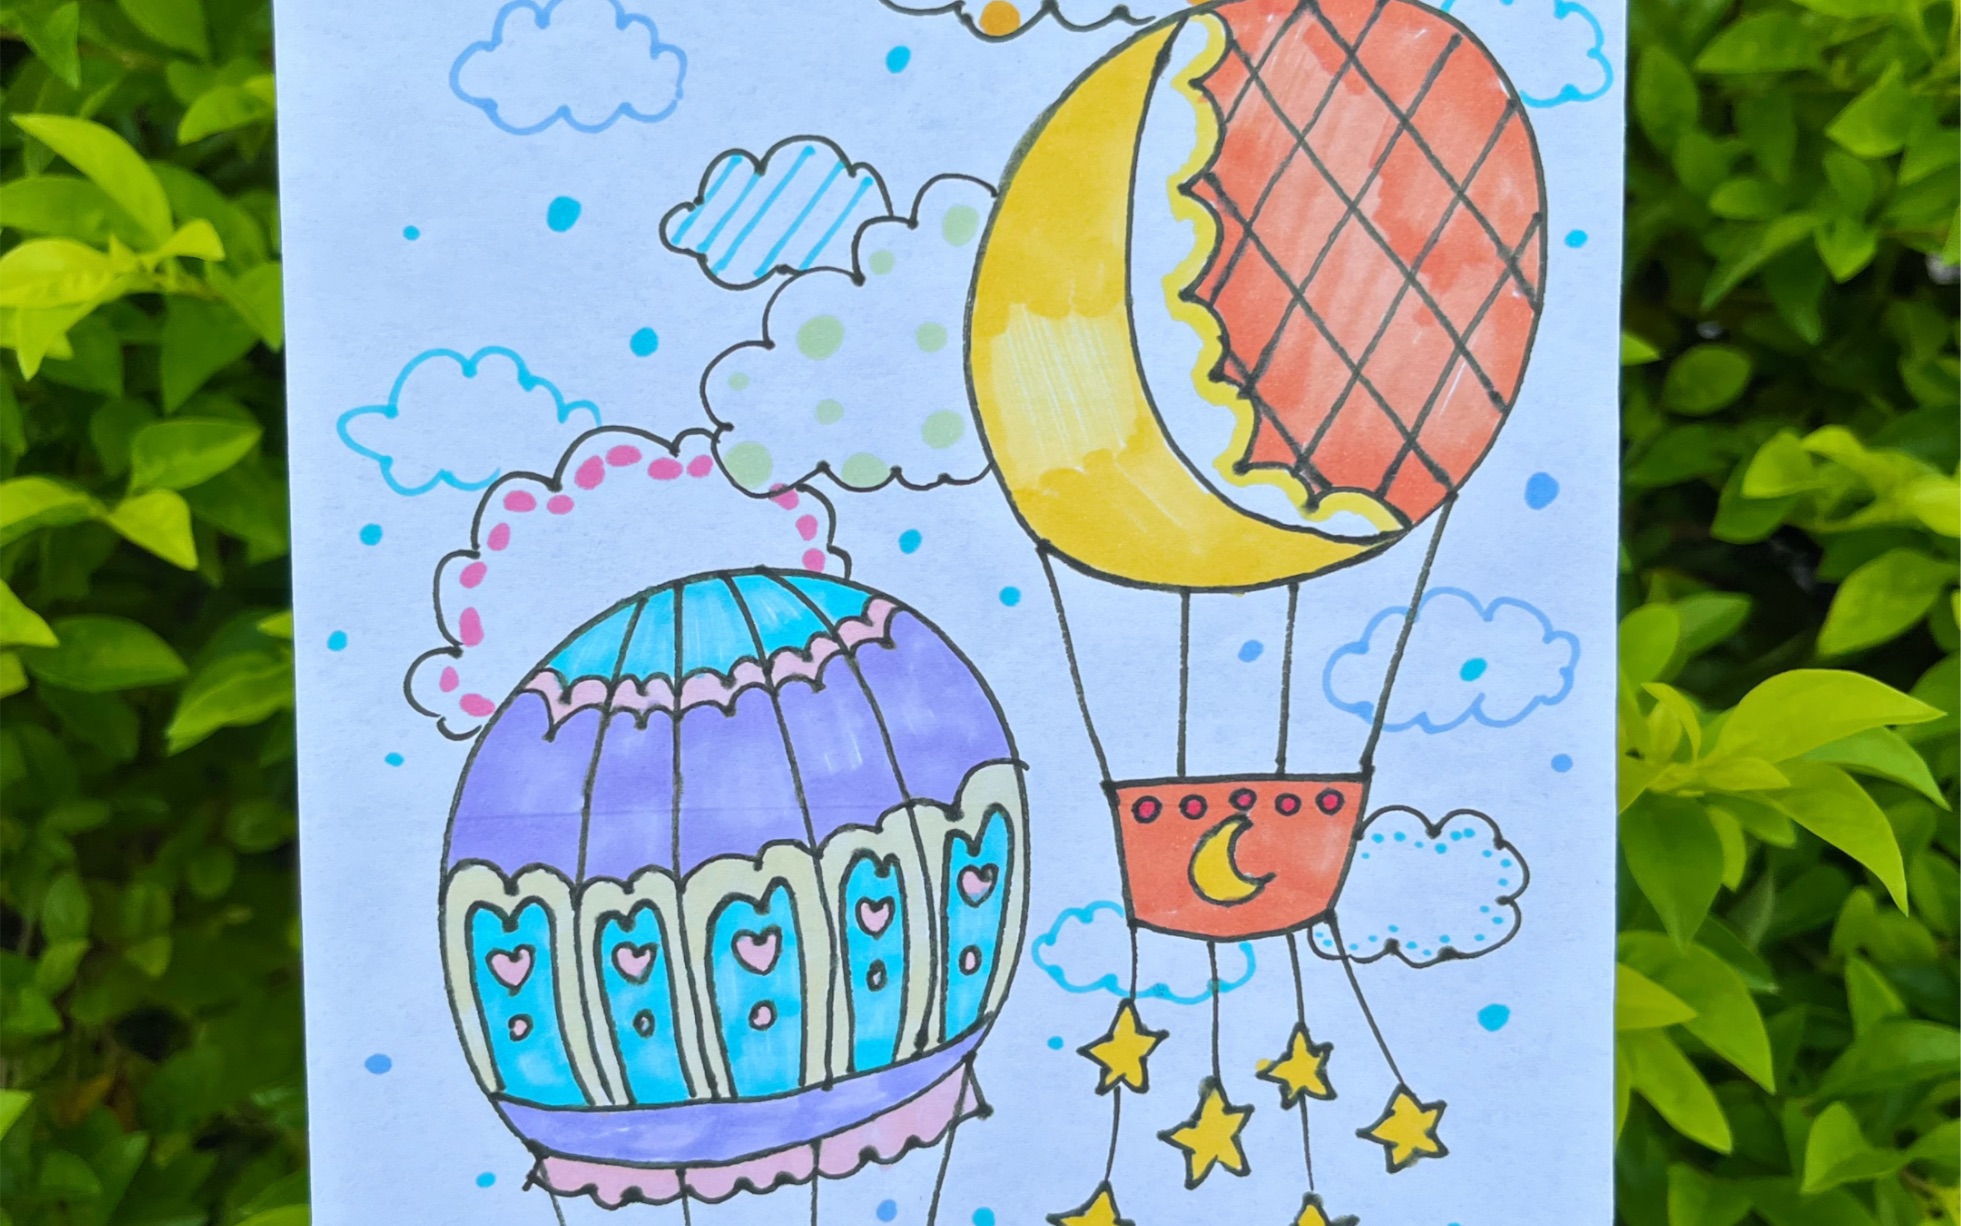 热气球简笔画 绘画图片